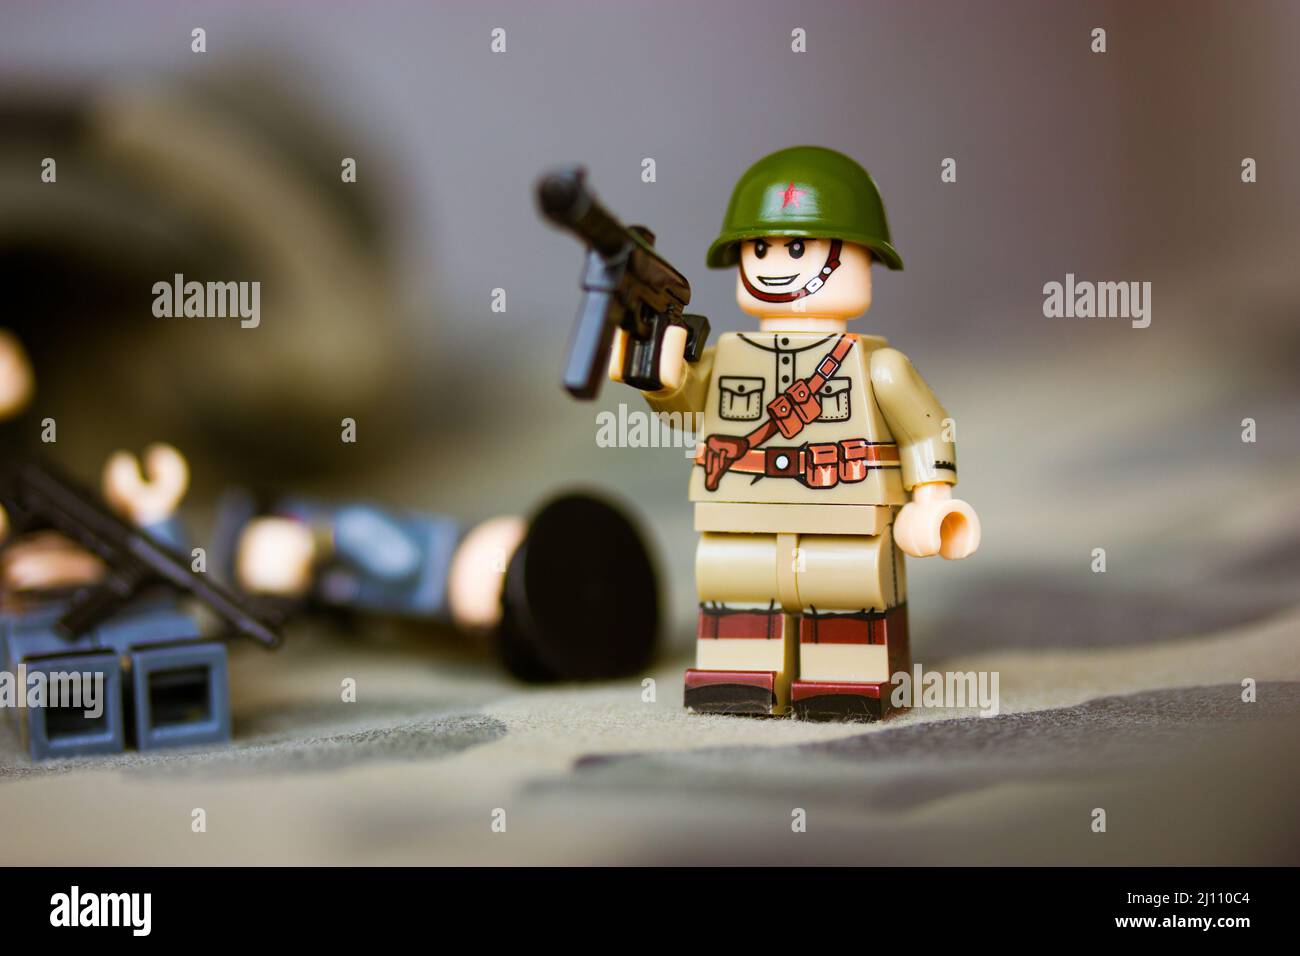 Lego army immagini e fotografie stock ad alta risoluzione - Alamy